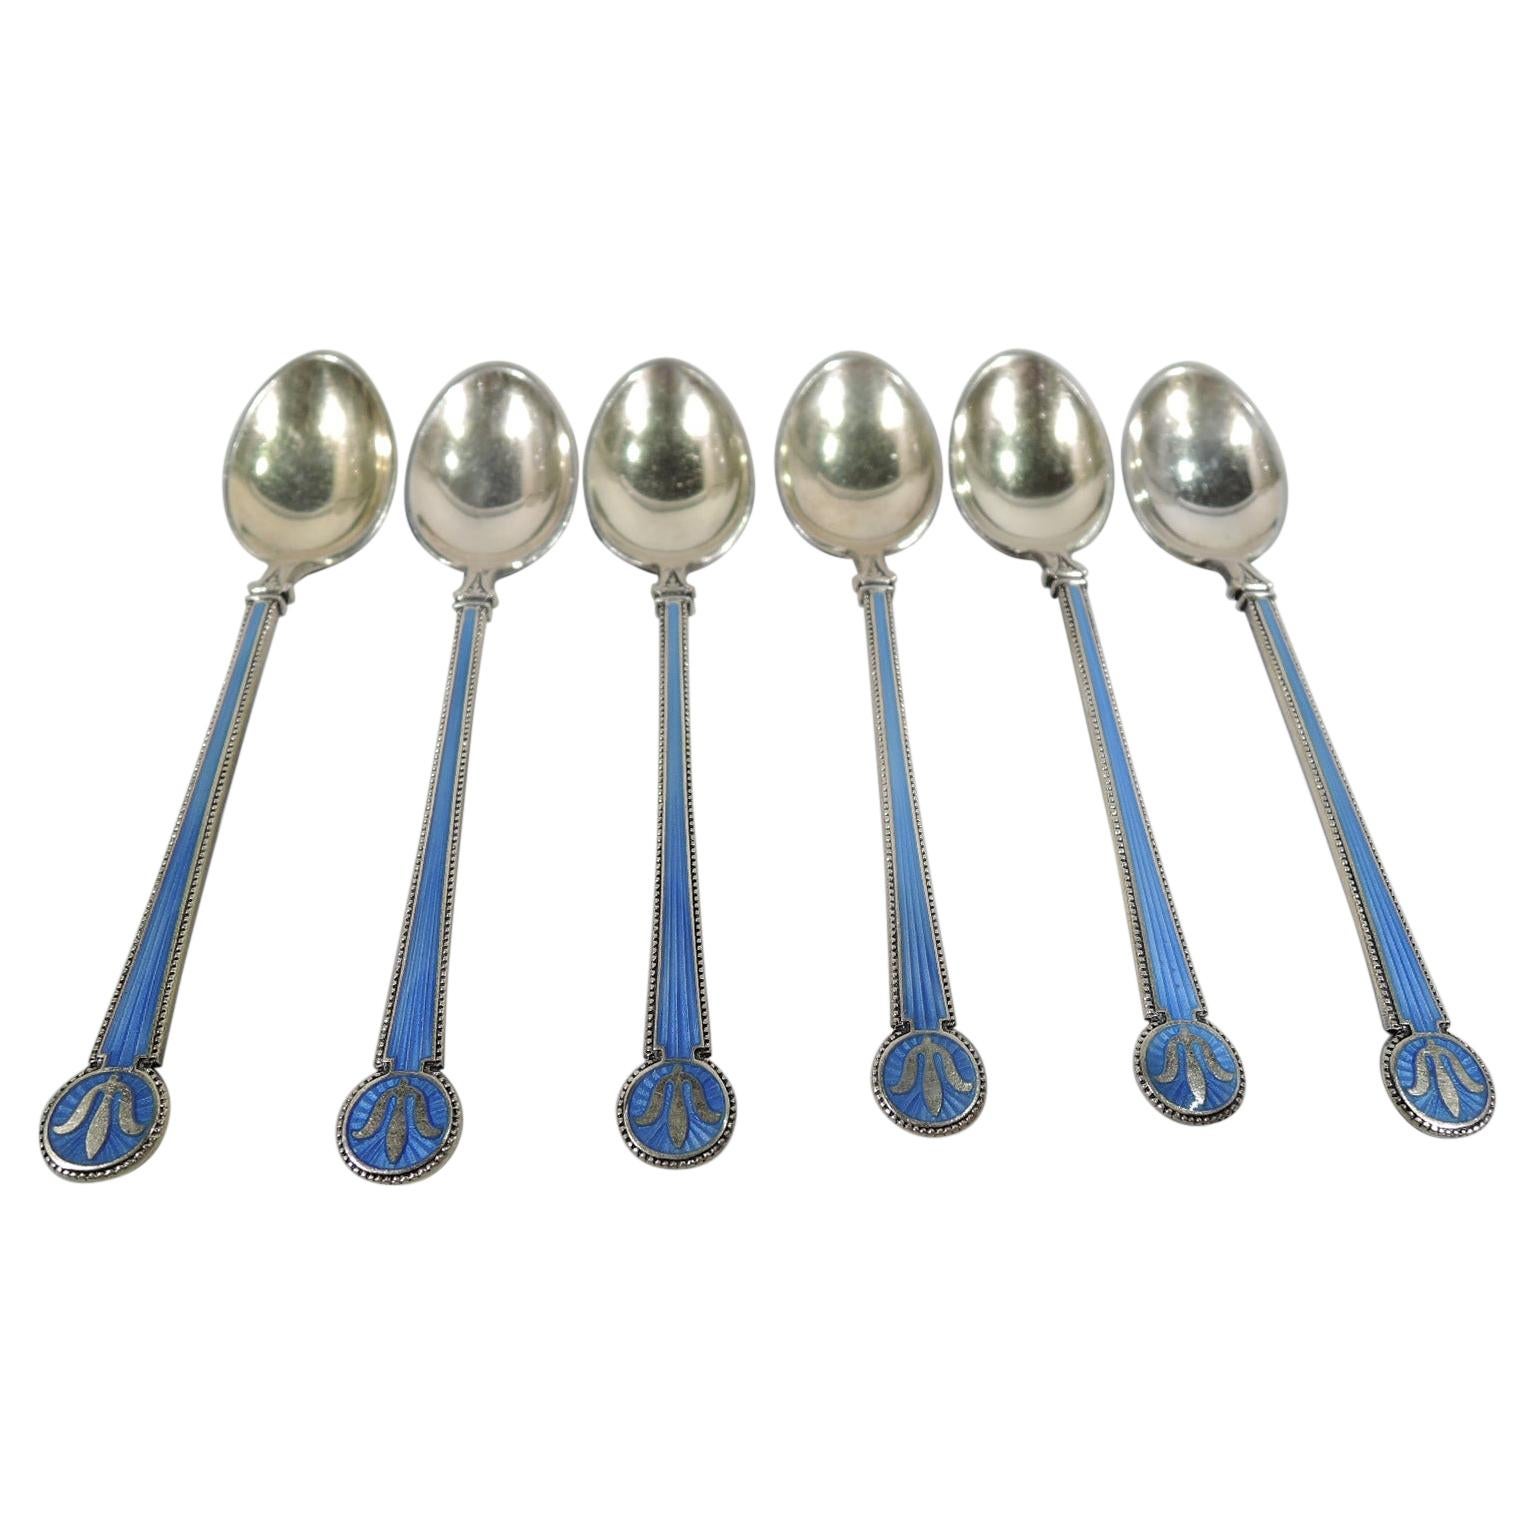 Norwegian Silver Gilt & Enamel Demitasse Spoons by David Andersen